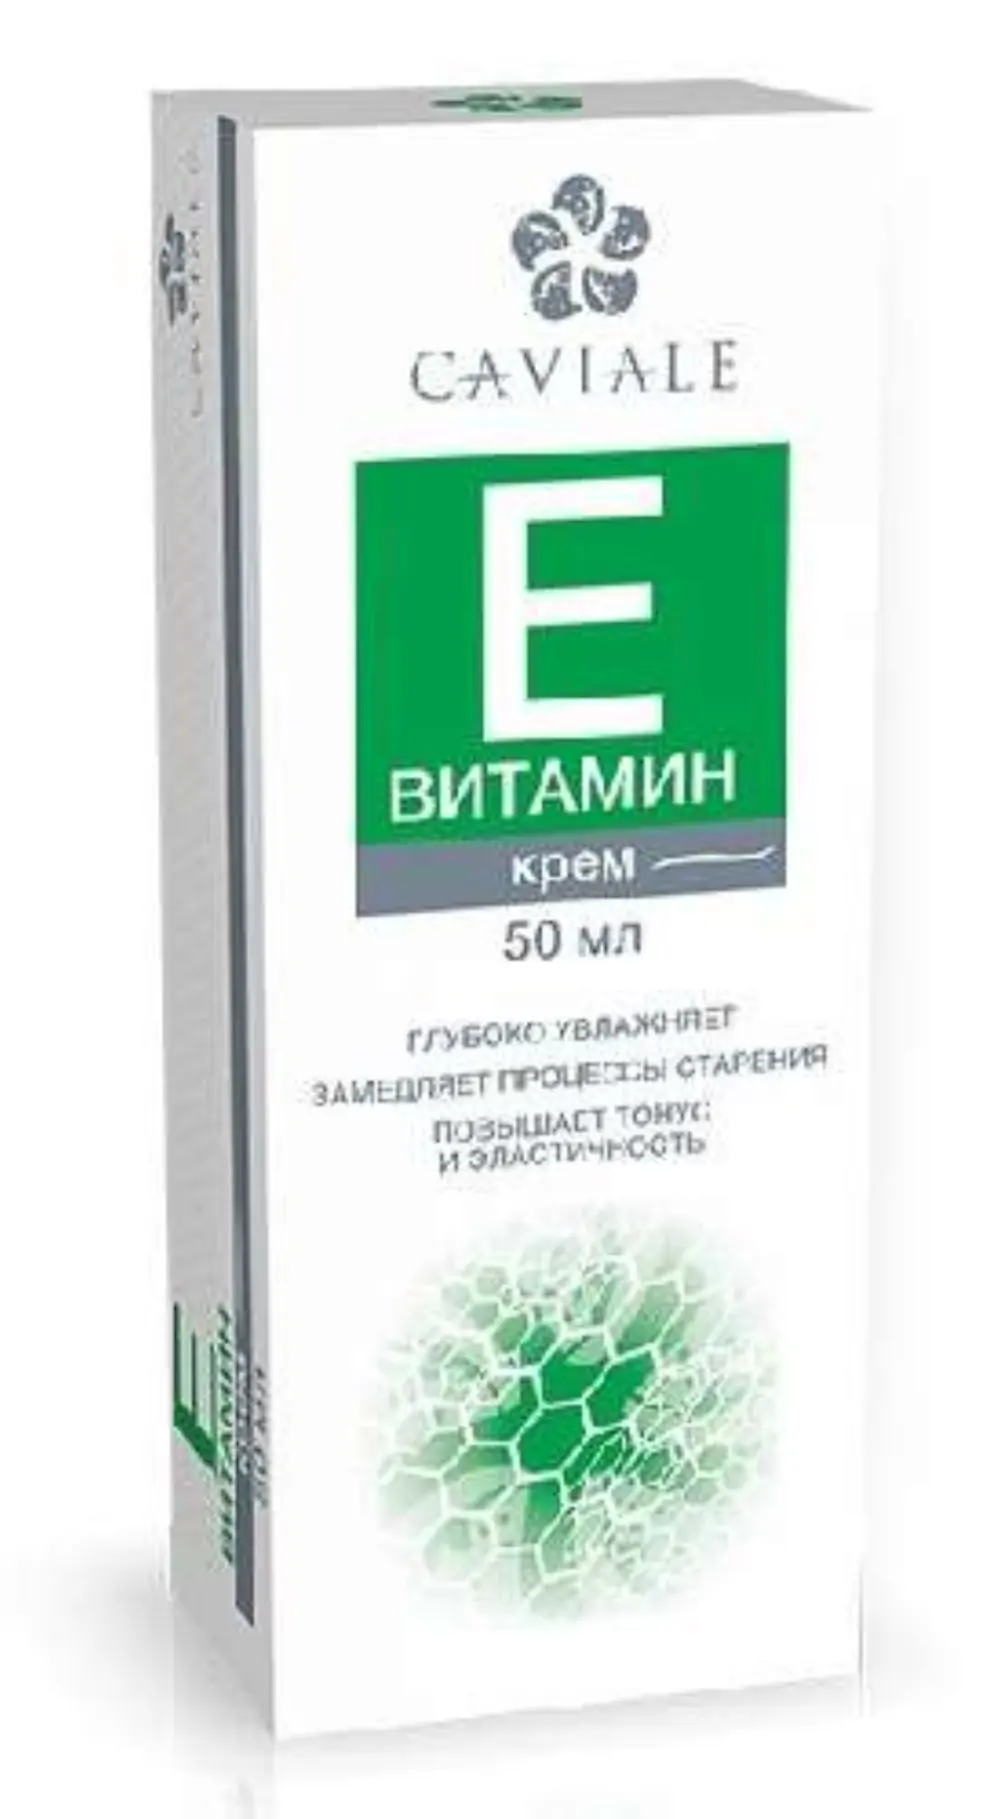 Кавиале крем д/лица витамин Е 50мл